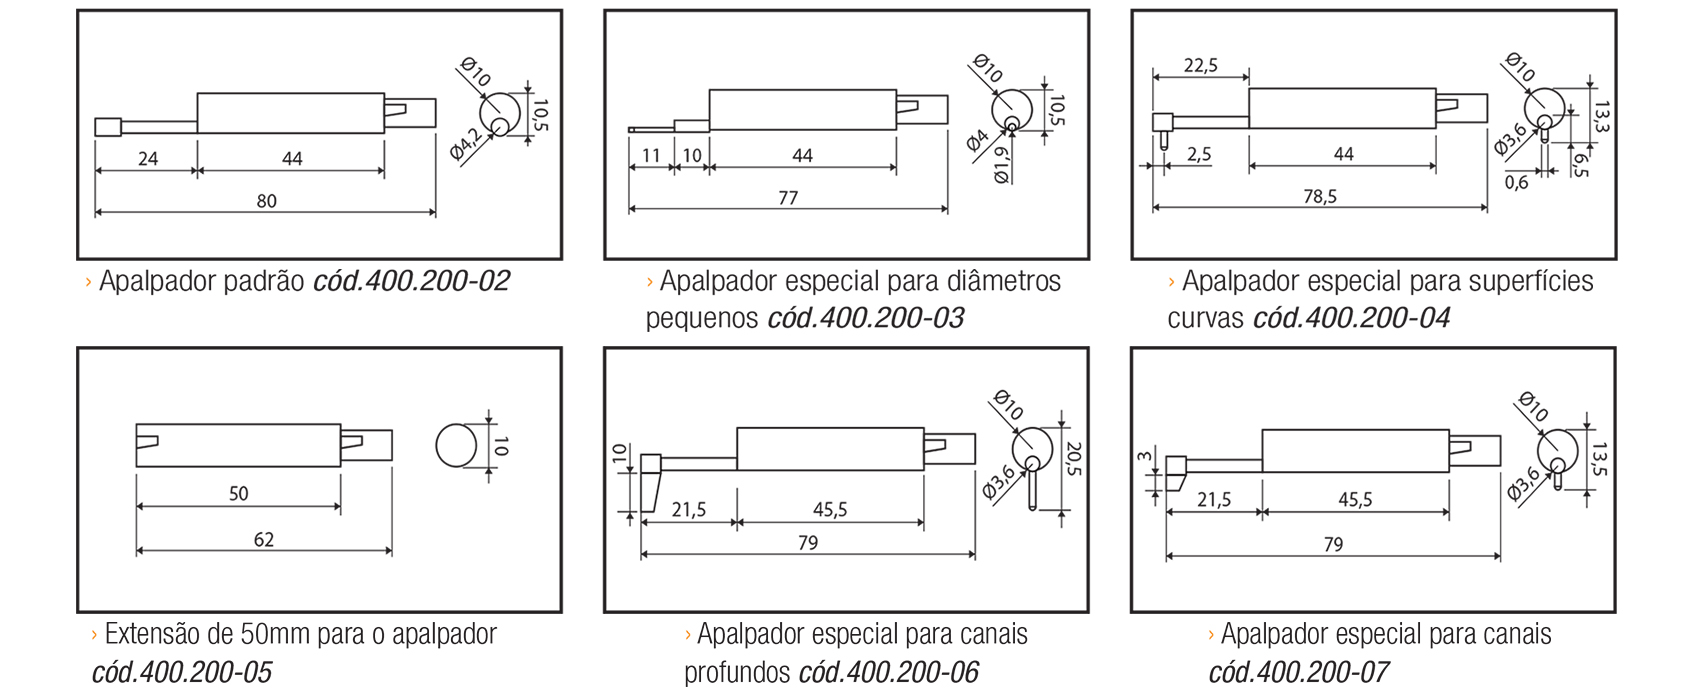 Dimensional - Especificações técnicas das Pontas Apalpadoras
